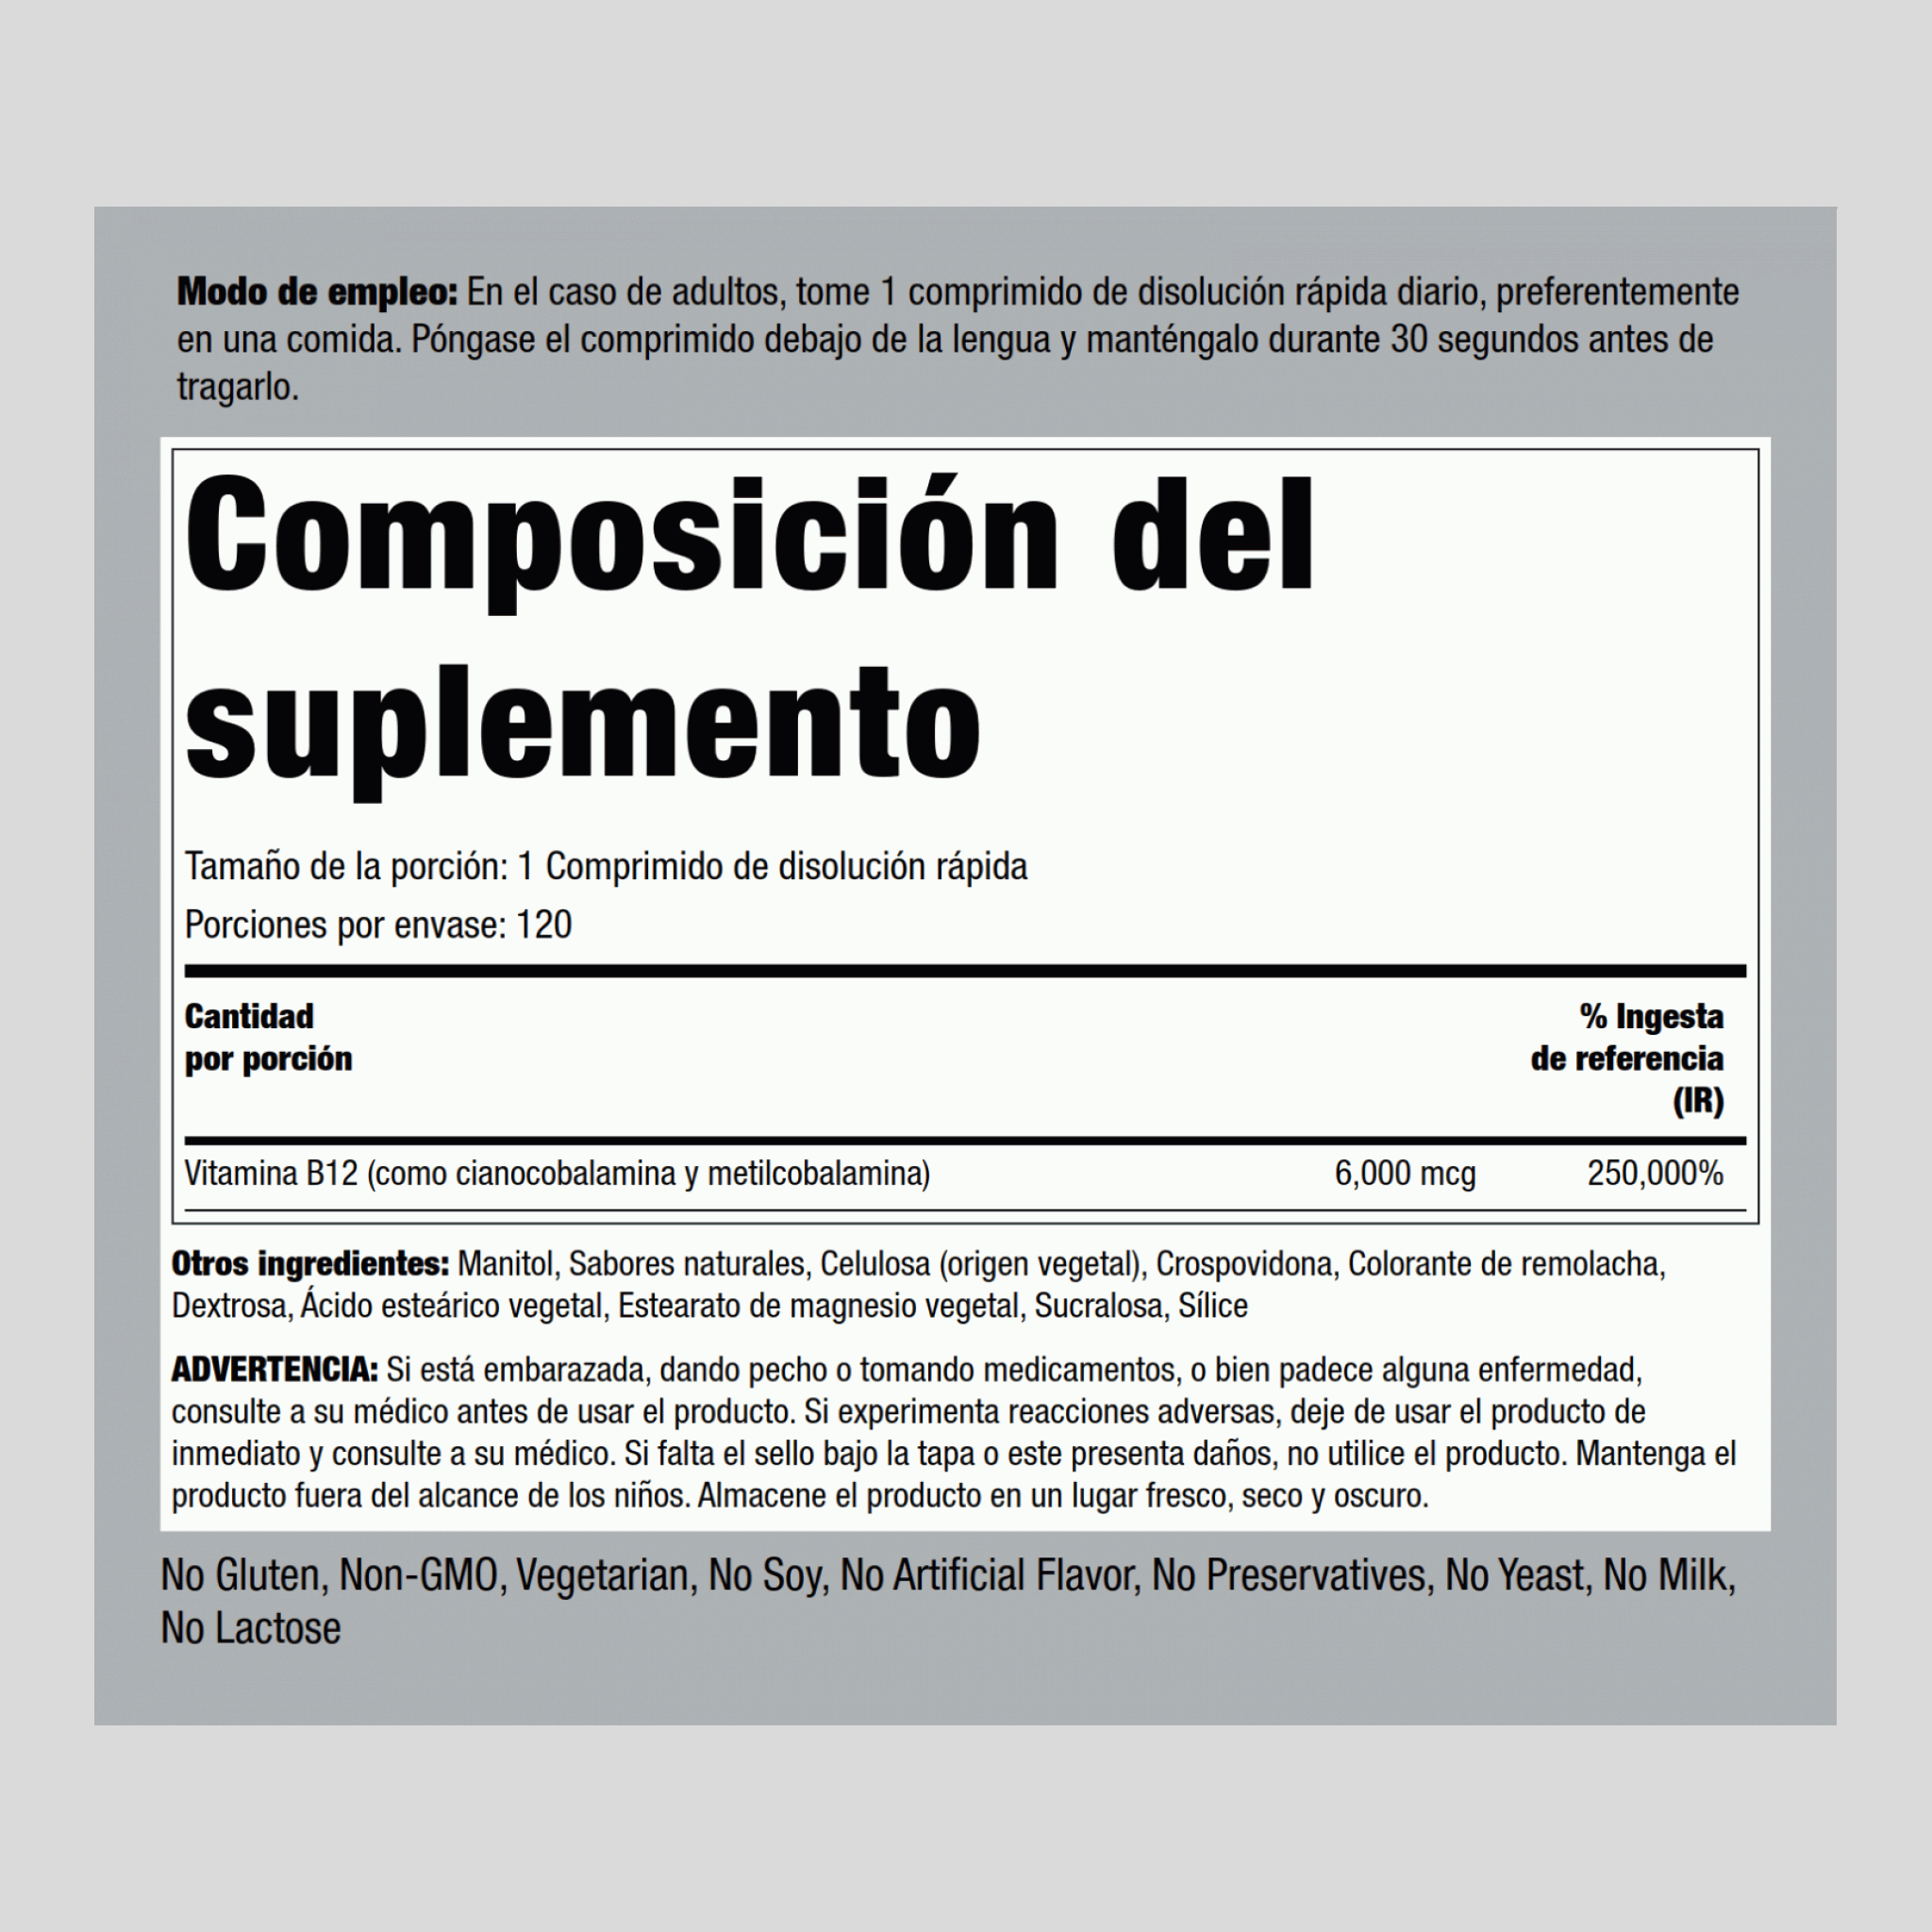 Complexe méthylcobalamine + vitamine B12 (sublingual),  6000 mcg 120 Comprimés à dissolution rapide 2 Bouteilles